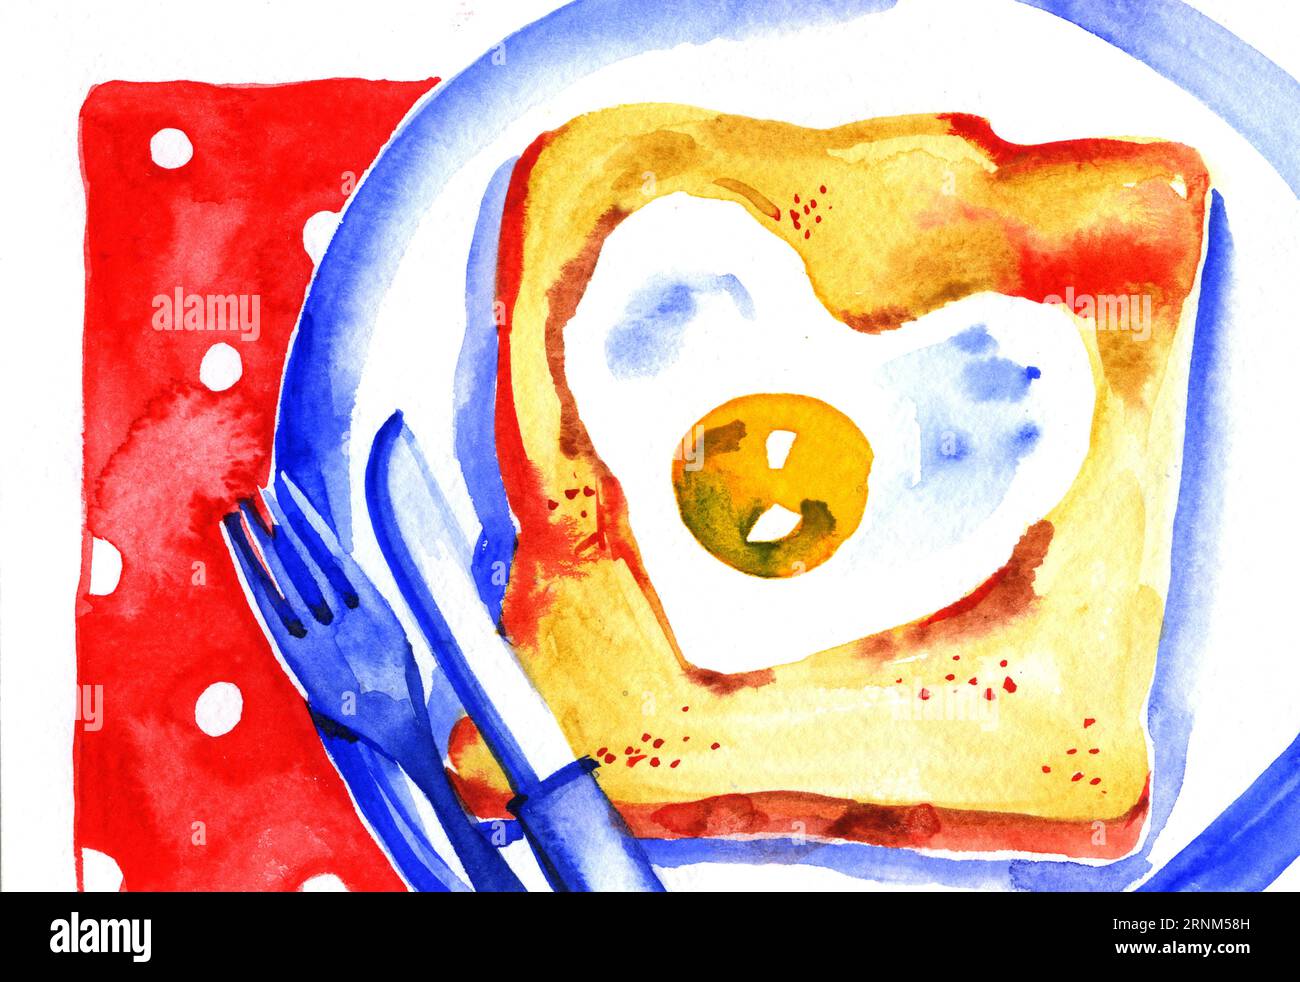 Petit déjeuner toast peint à l'aquarelle avec des œufs brouillés Banque D'Images